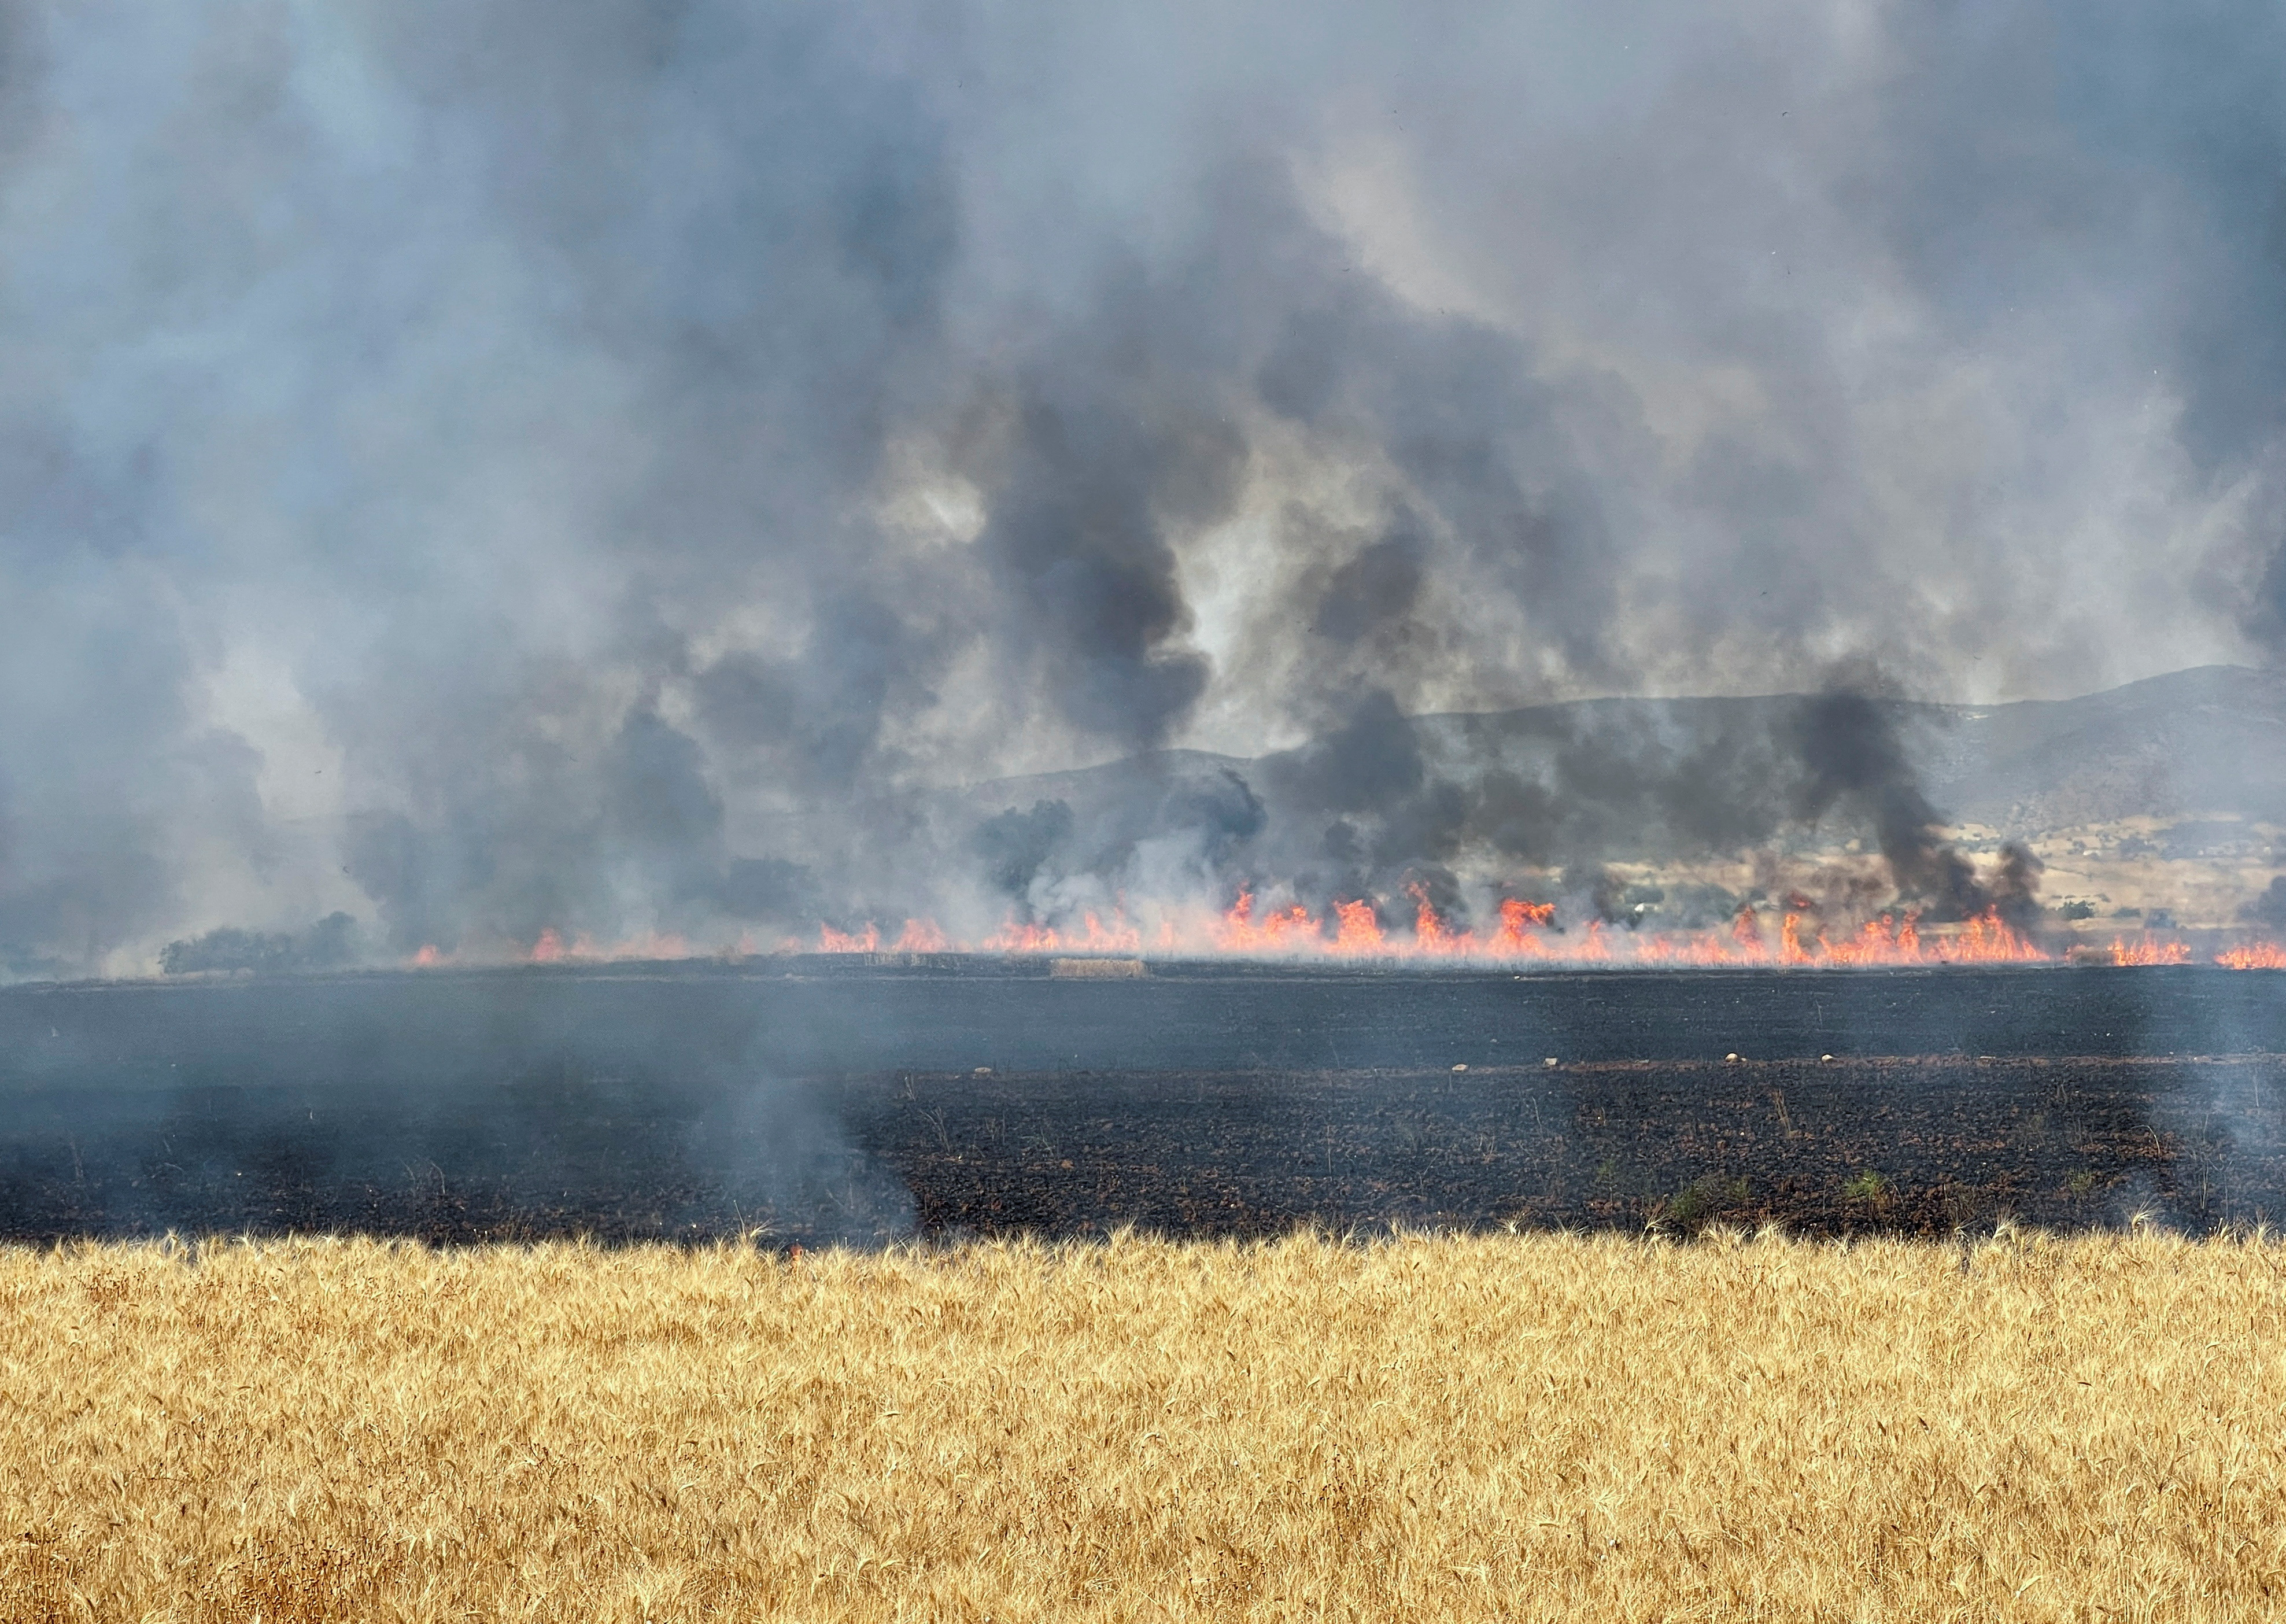 Fire burns on wheat field in Jendouba